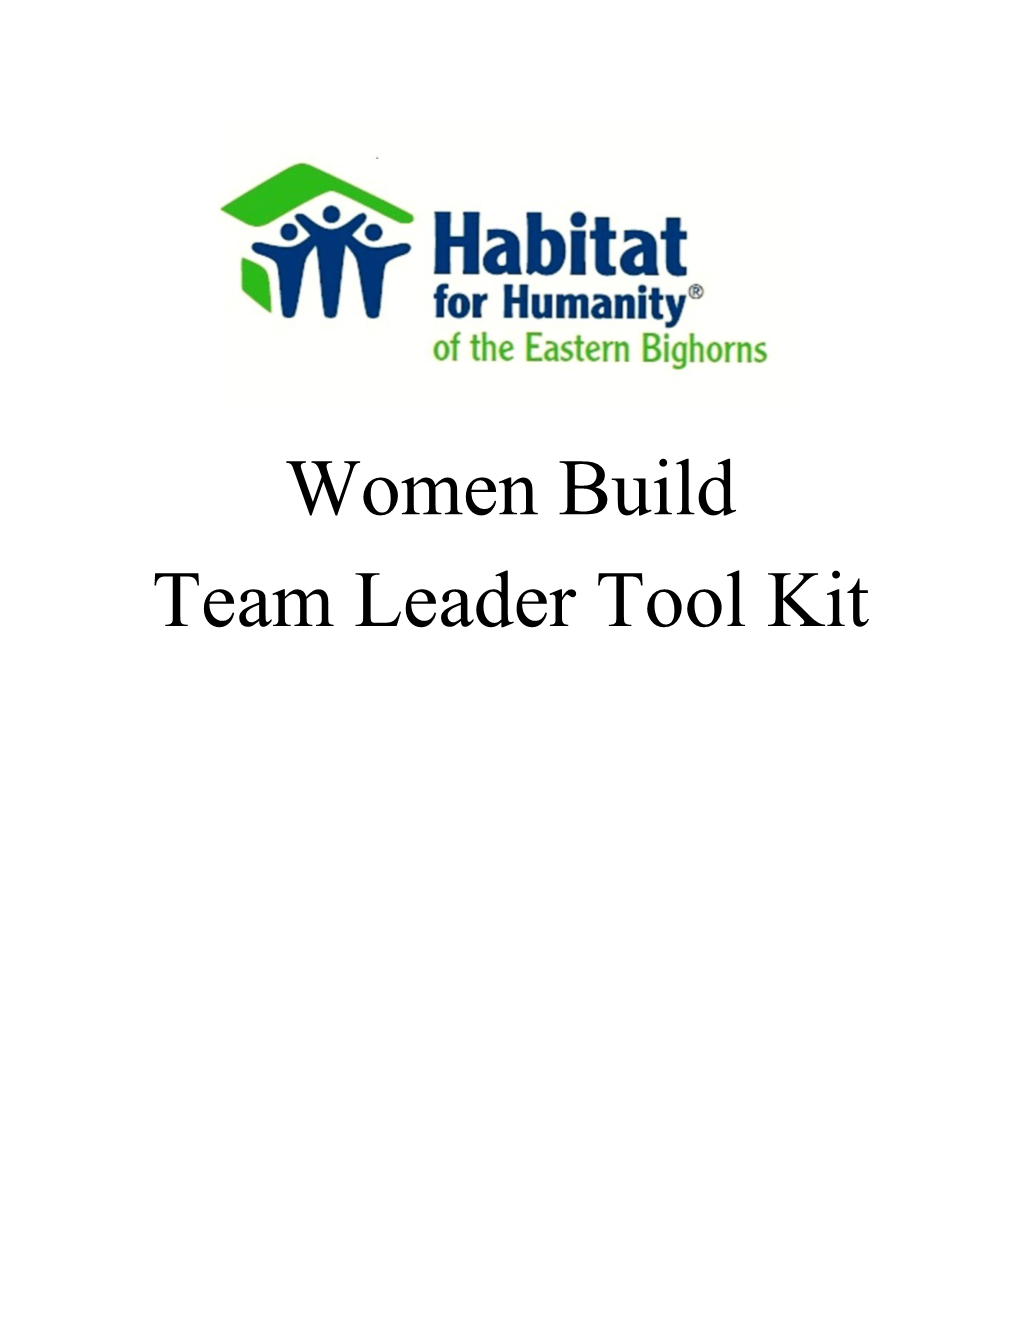 Team Leader Tool Kit